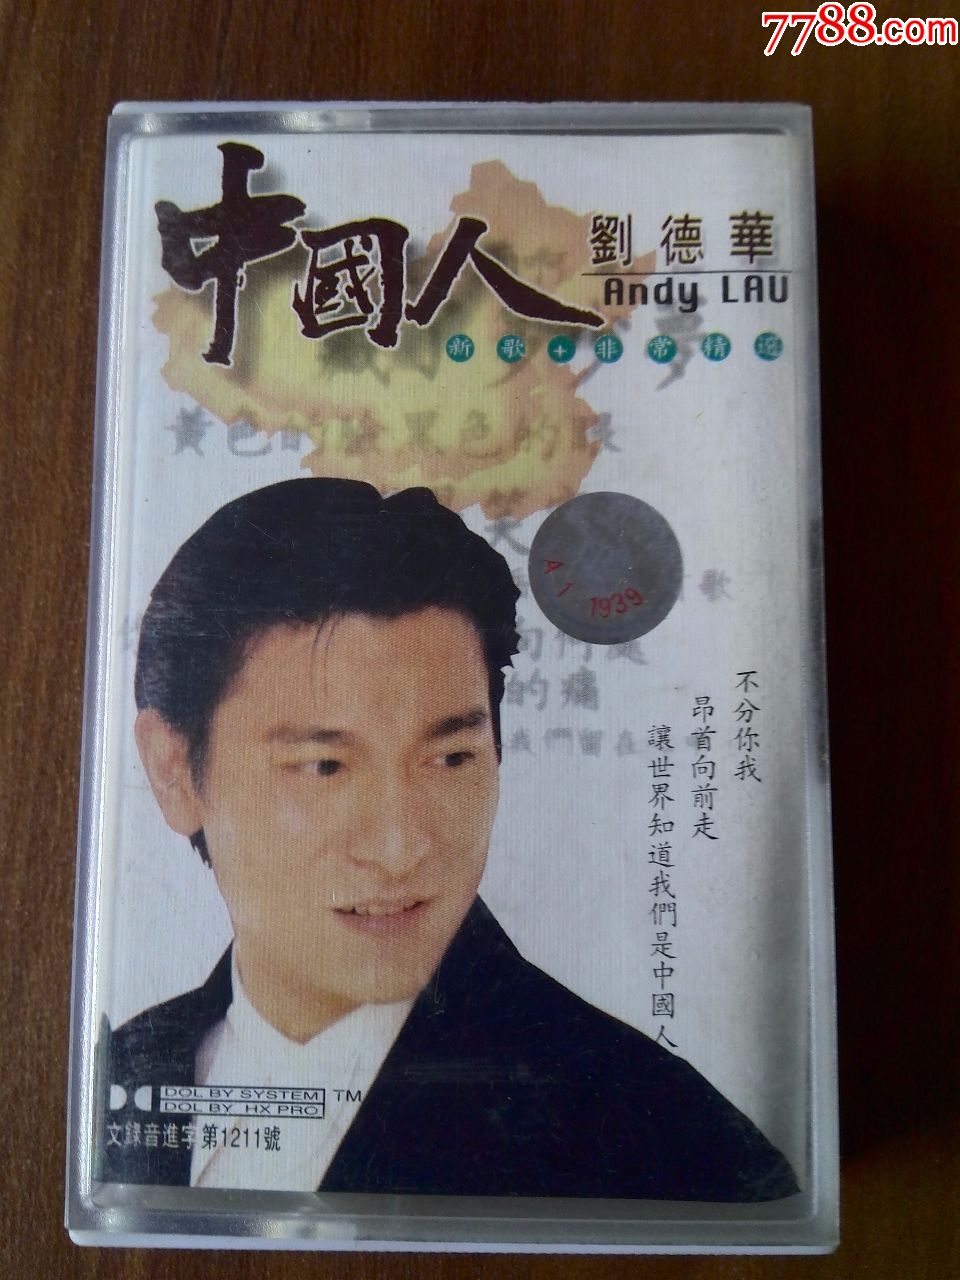 刘德华演唱专辑中国人西藏音像出版社出版新宇xy1114